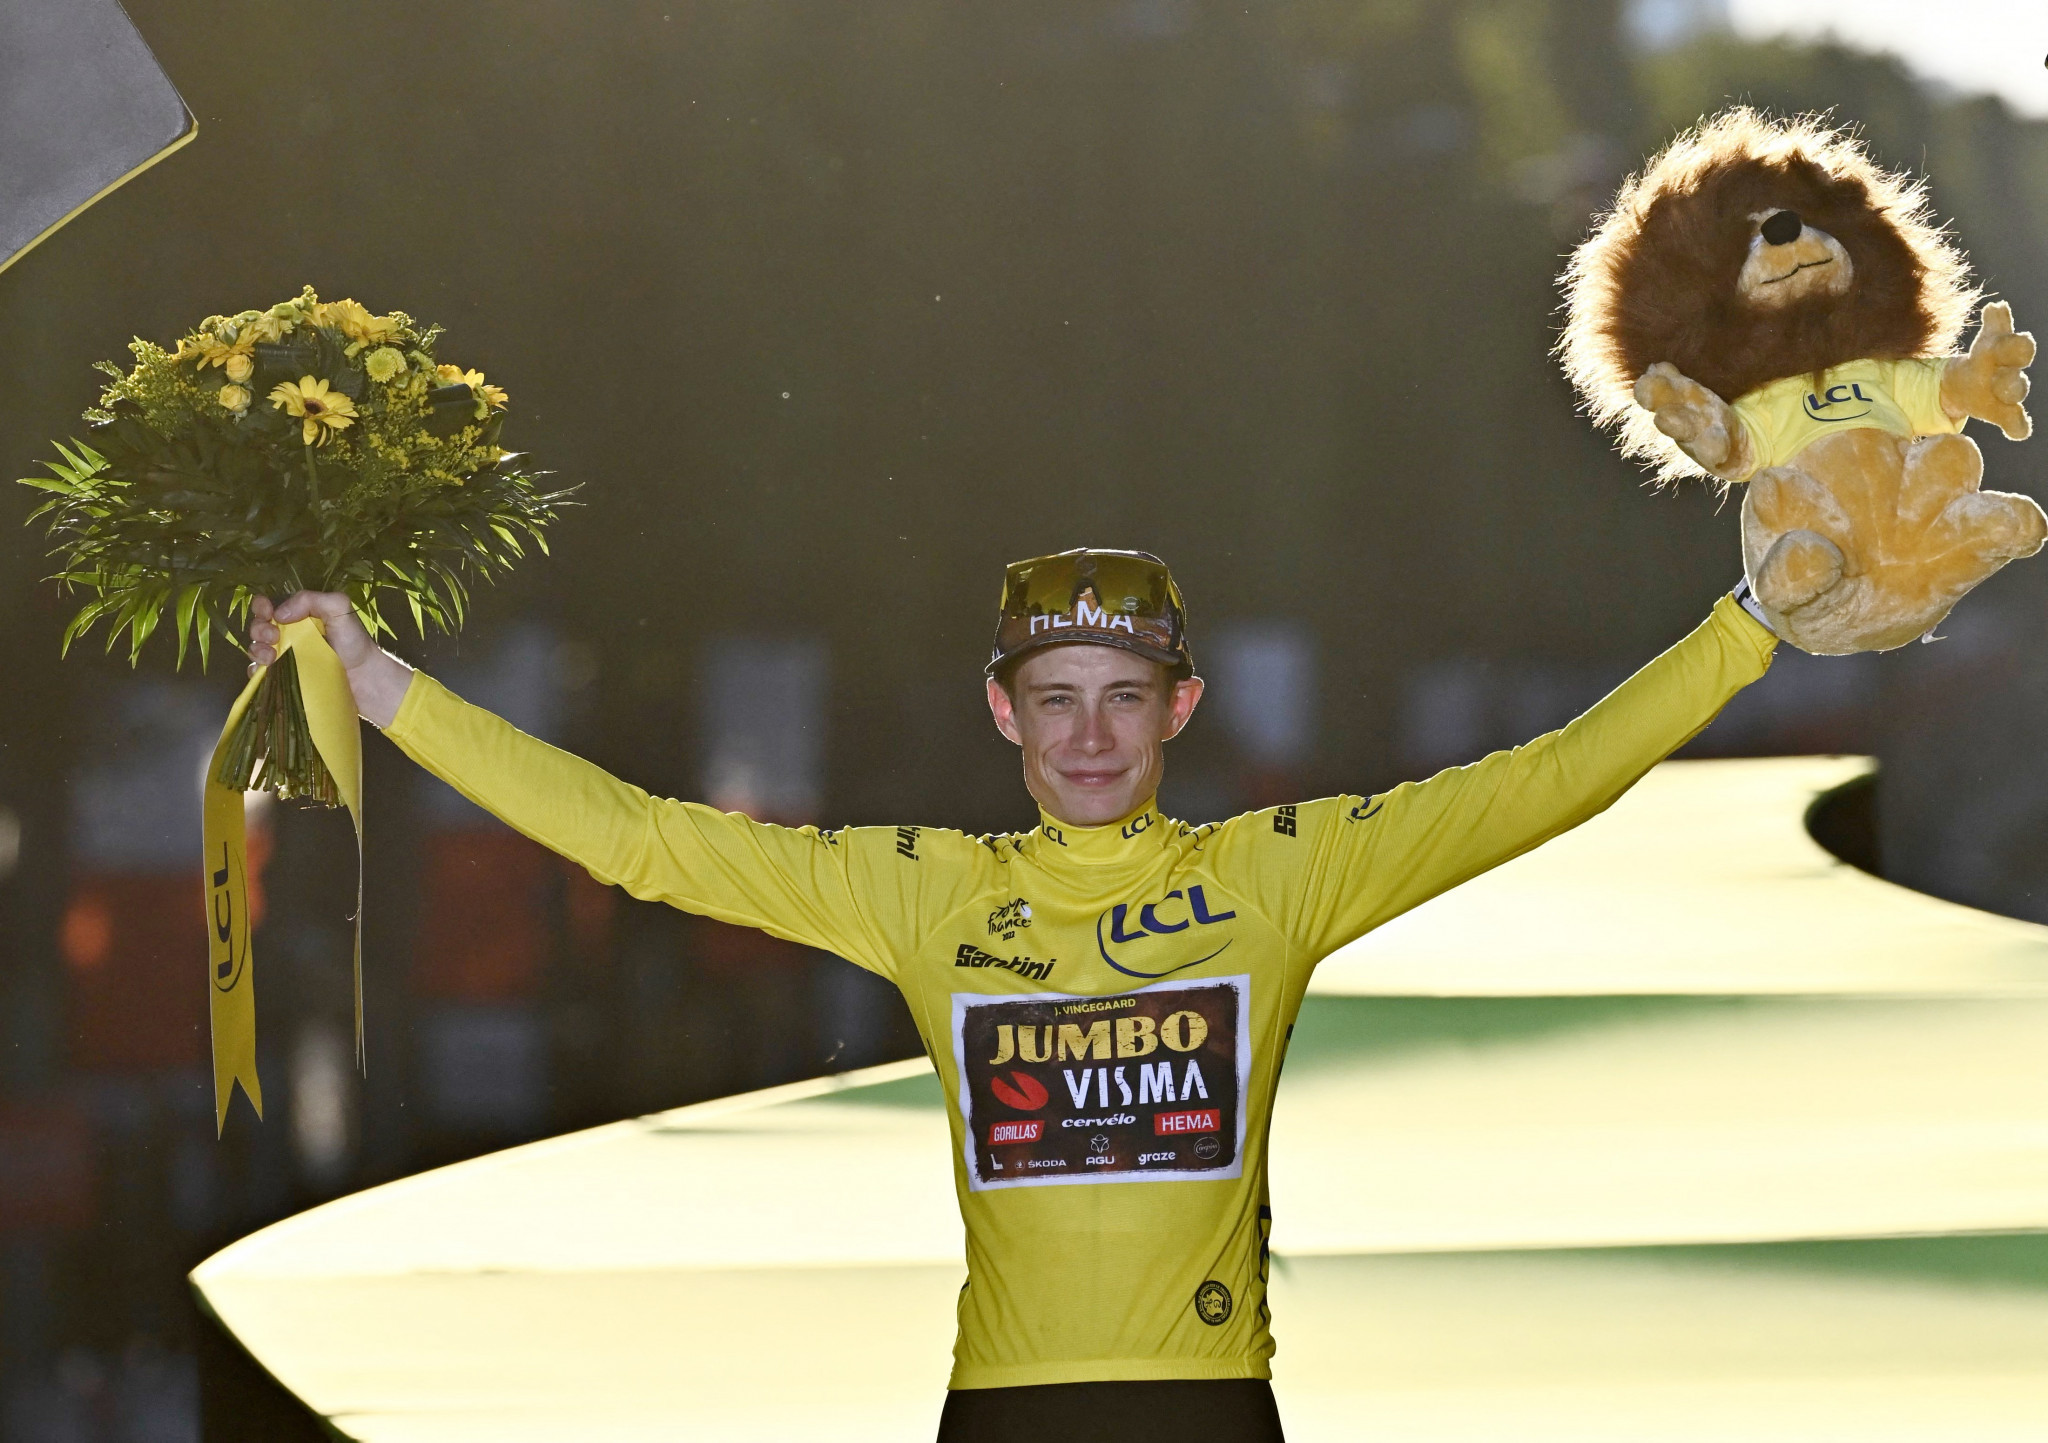 Jonas Vingegaard, a Dane, won this year's Tour de France ©Getty Images